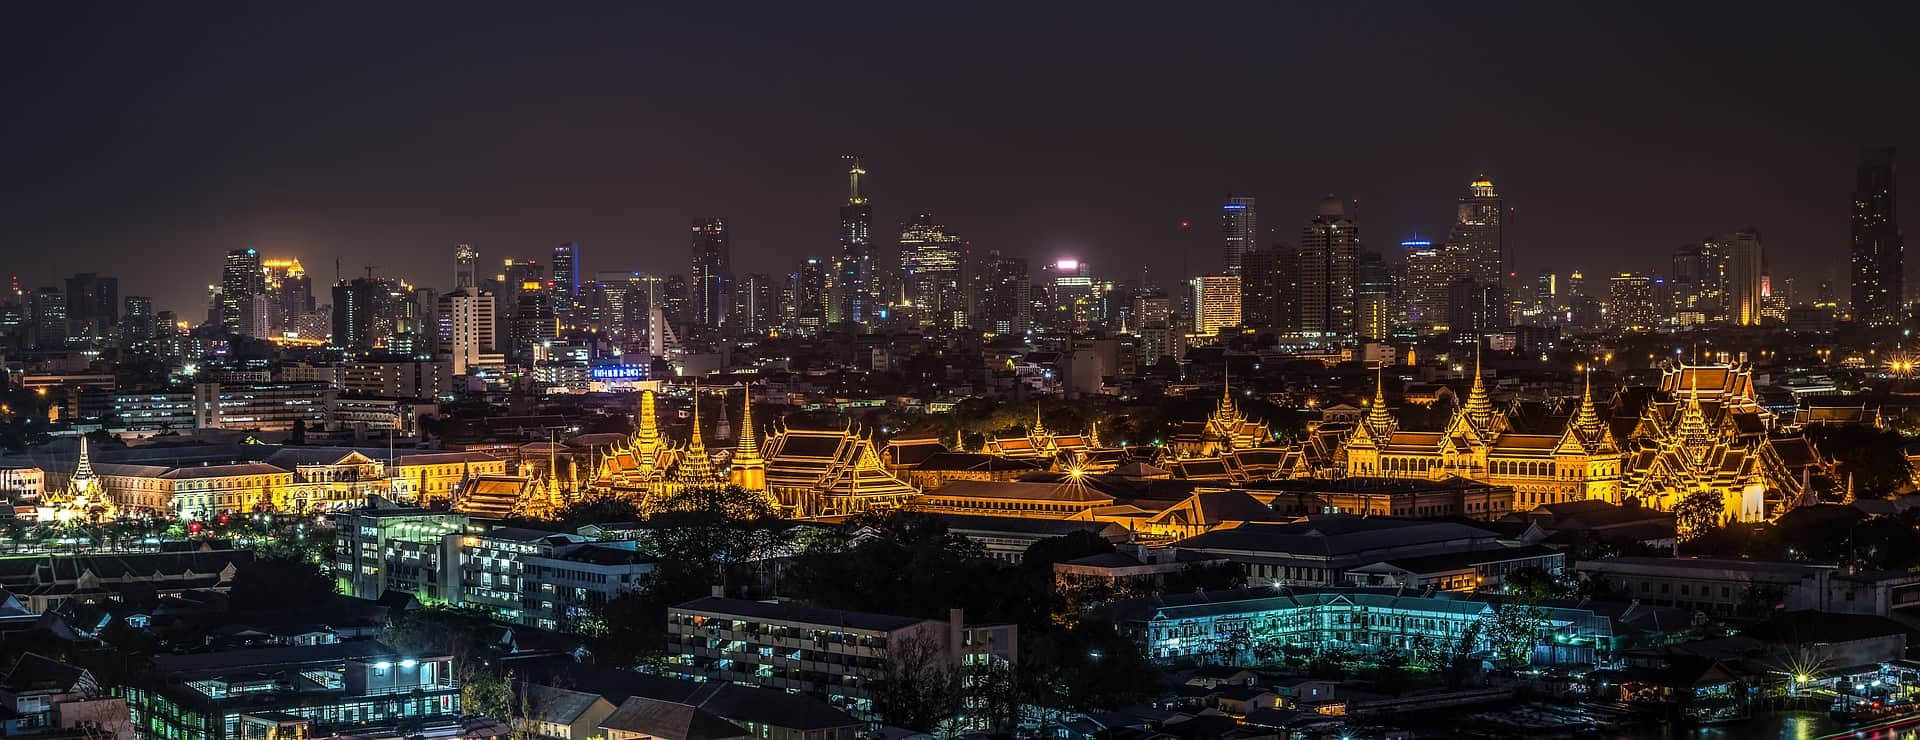 Download Bangkok City Night Lights Photography Wallpaper 